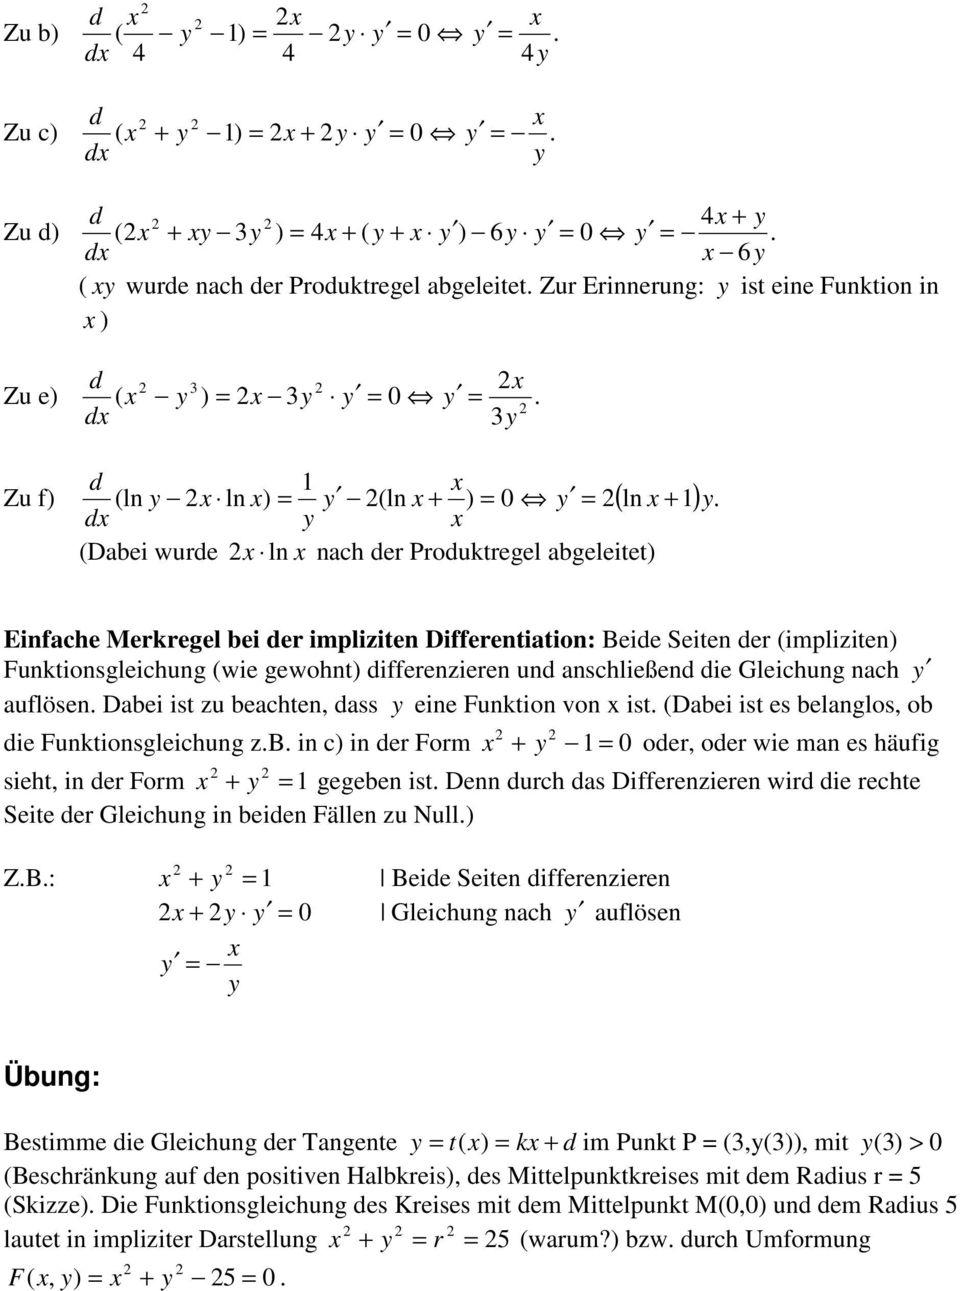 Einfache Merkregel bei er impliziten Differentiation: Beie Seiten er (impliziten) Funktionsgleichung (wie gewohnt) ifferenzieren un anschließen ie Gleichung nach auflösen.